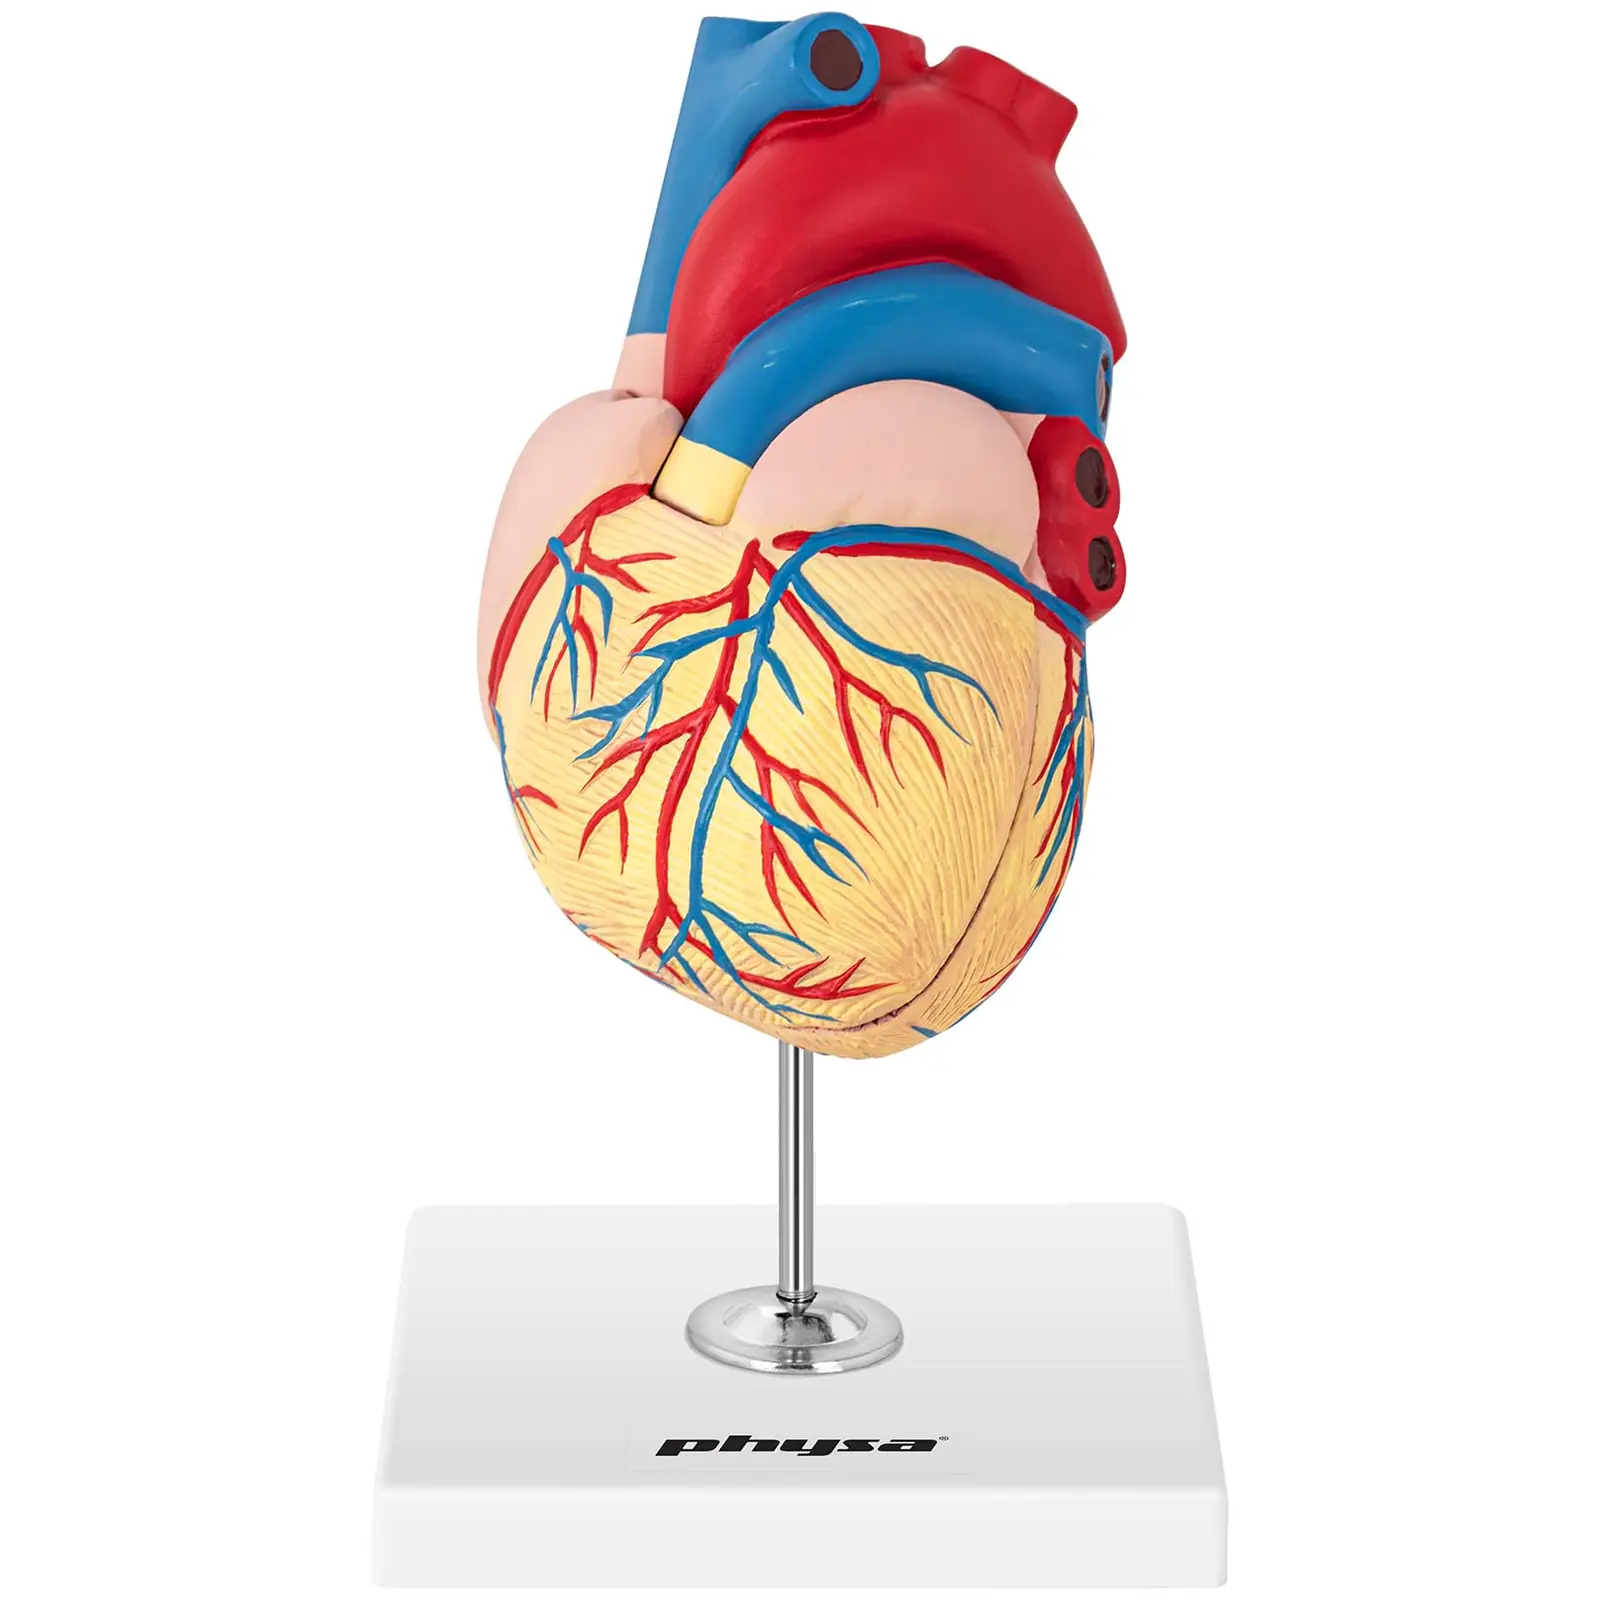 Maquette anatomique du cœur humain - En 2 parties - Grandeur nature - 4